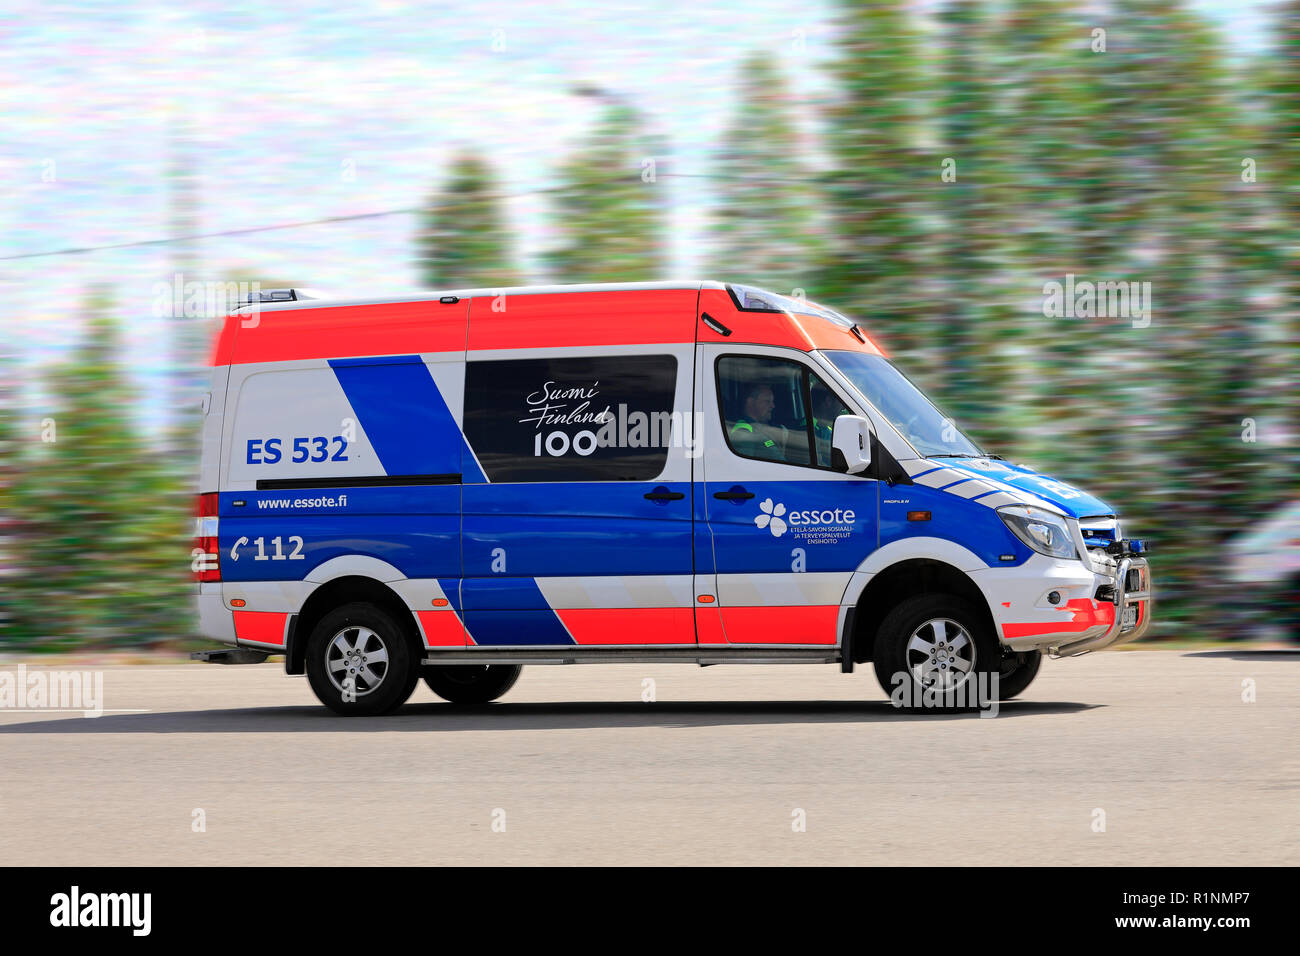 Orivesi, Finnland - 17. Juni 2018: Mercedes-Benz Krankenwagen der Essote, durch Profil Fahrzeuge hergestellt, mit finnischer Flagge Finnland feiert 100 Jahre. Stockfoto